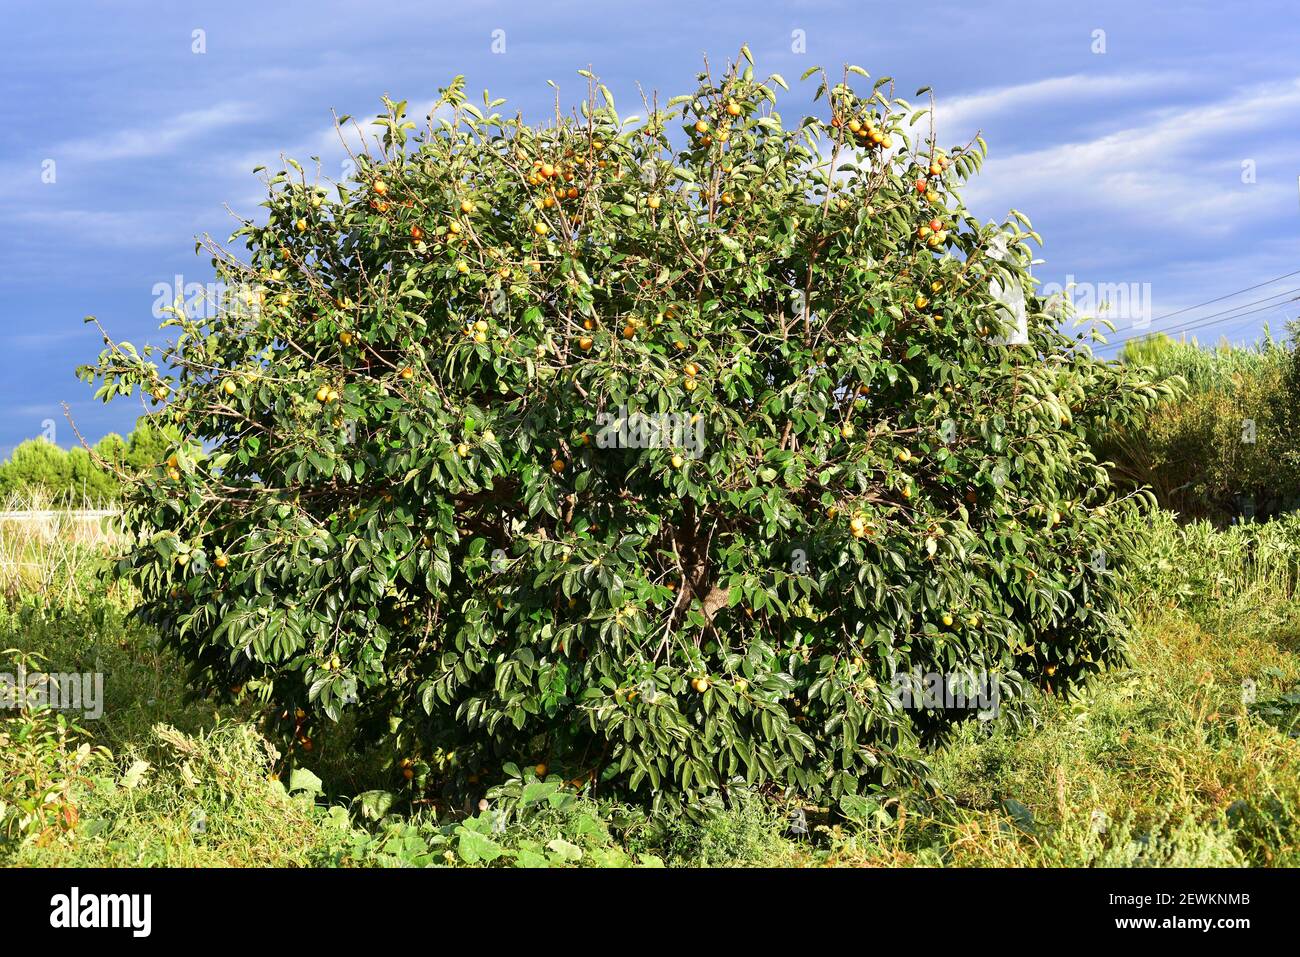 El caqui chino o caqui oriental (Diospyros kaki) es un árbol de hoja caduca nativo de Asia y ampliamente cultivado por sus frutos comestibles. Esta foto Foto de stock